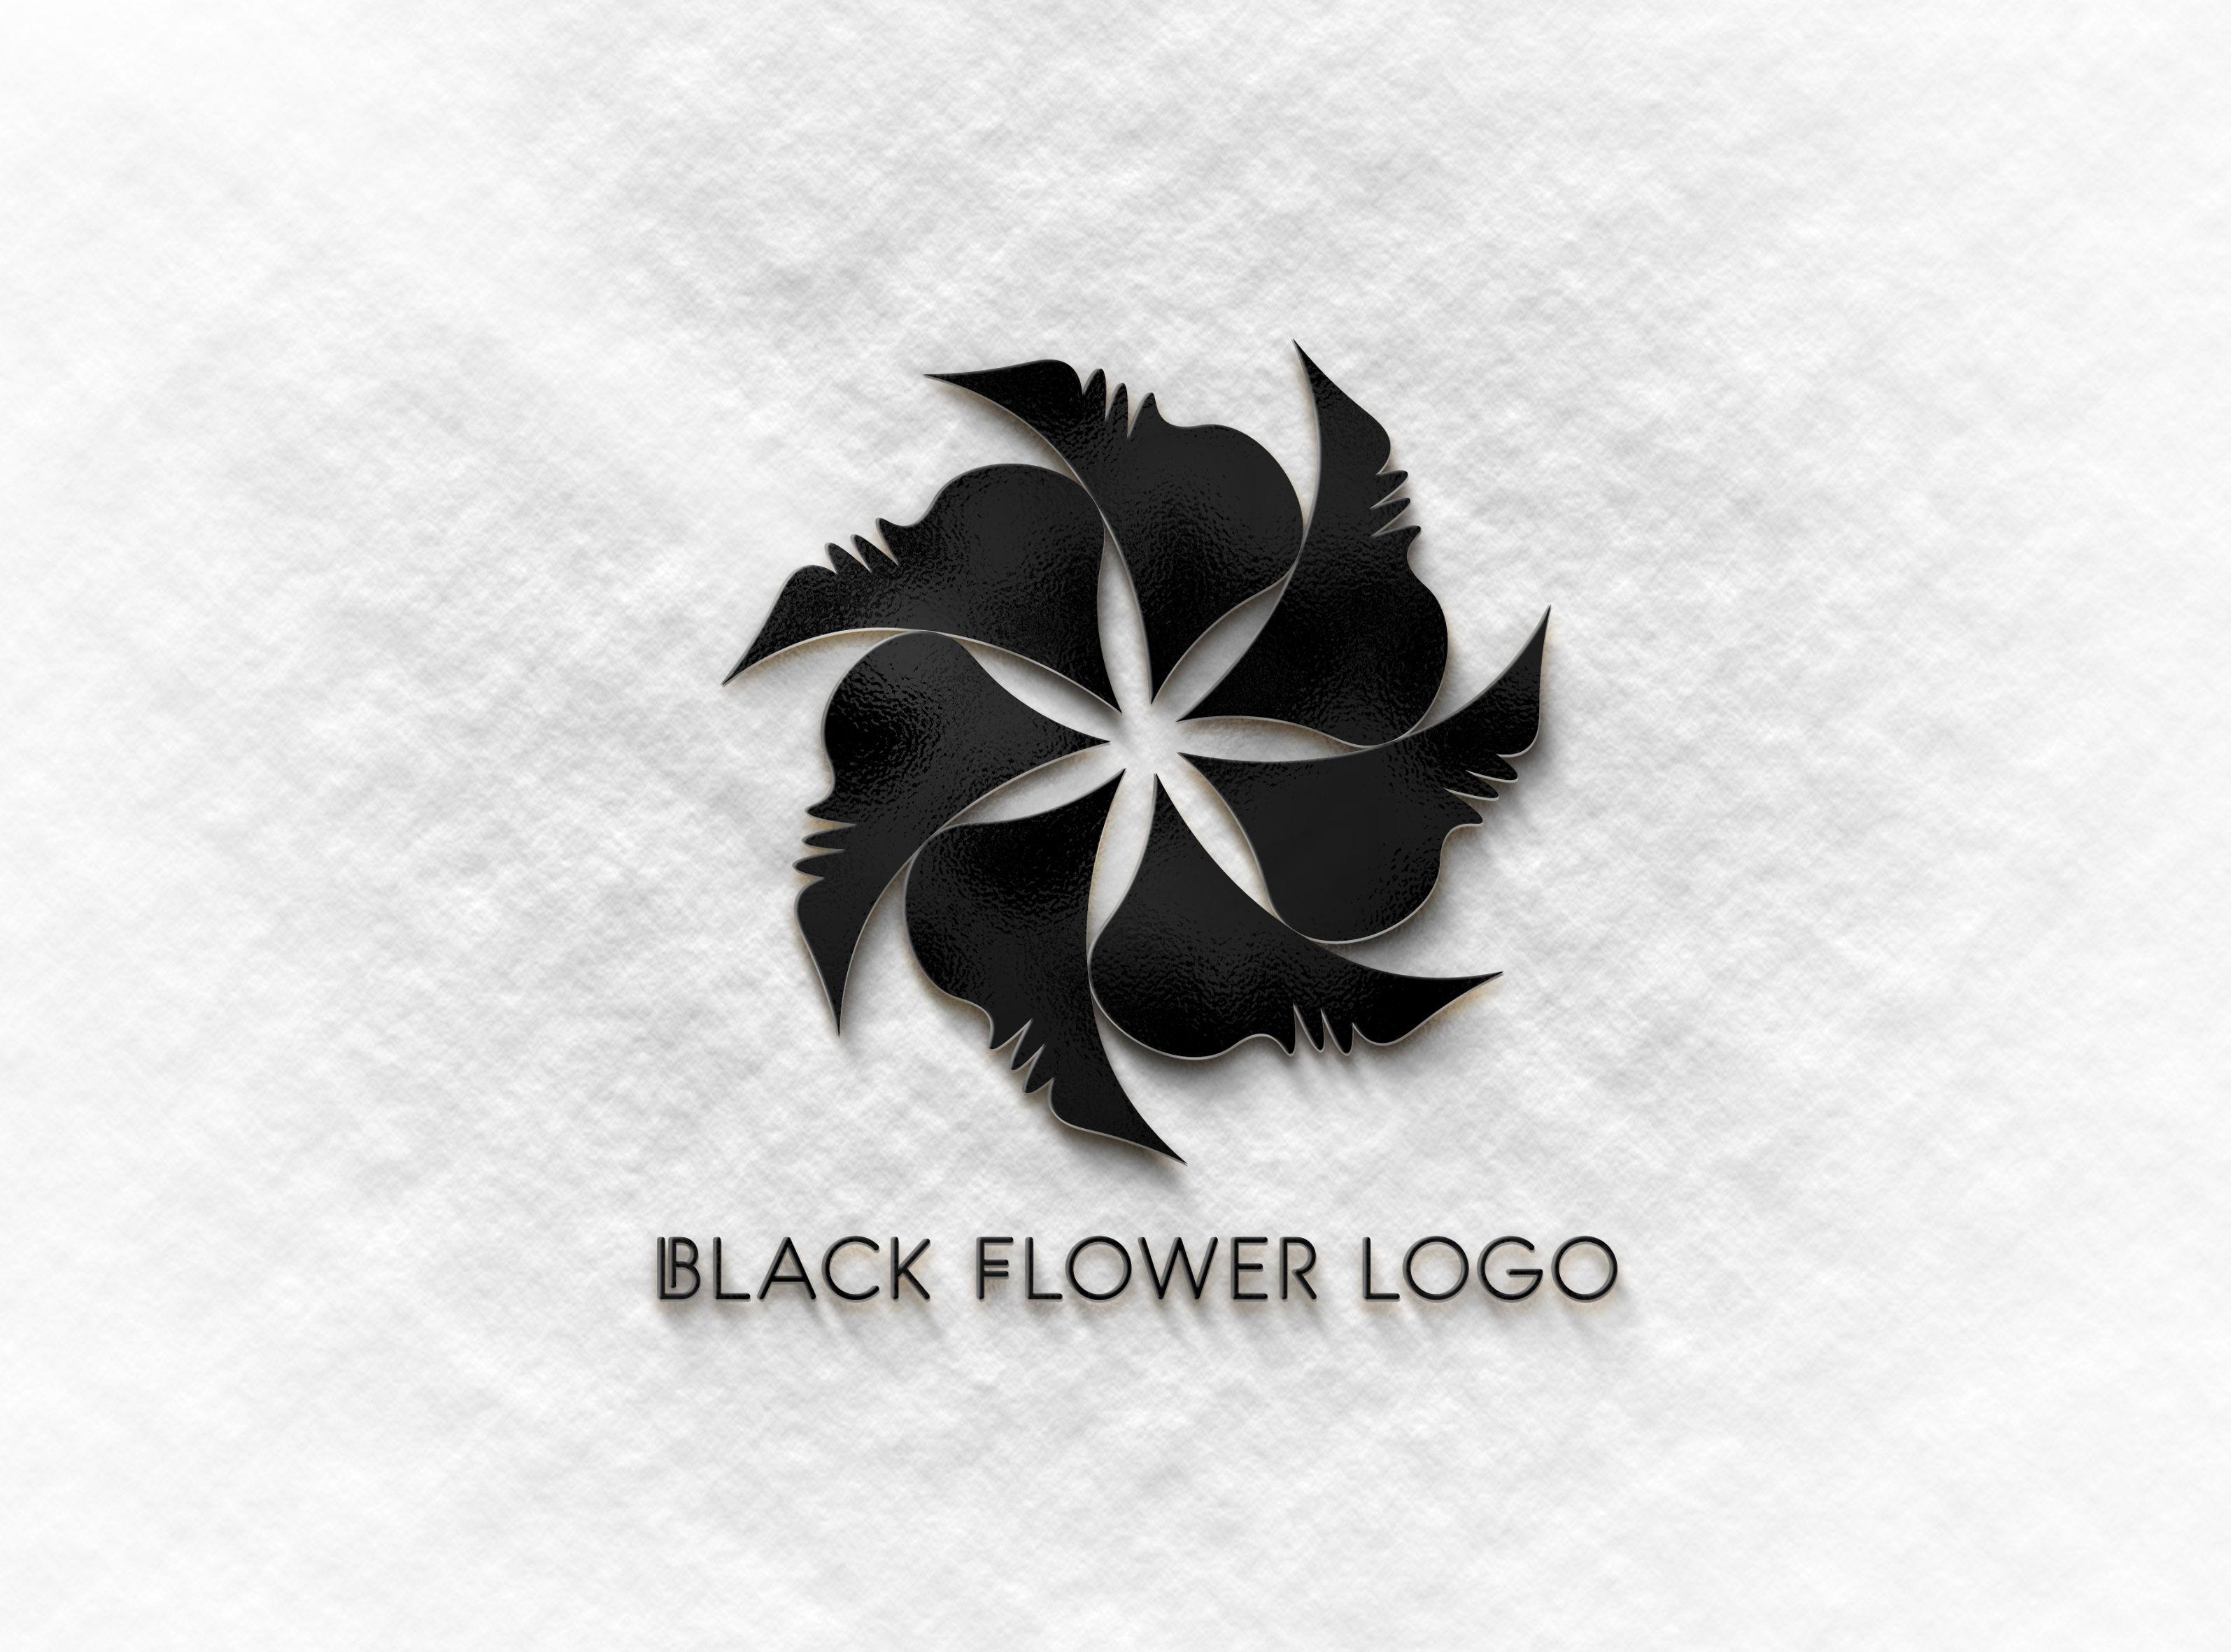 Black Flower Logo - Black Flower Logo